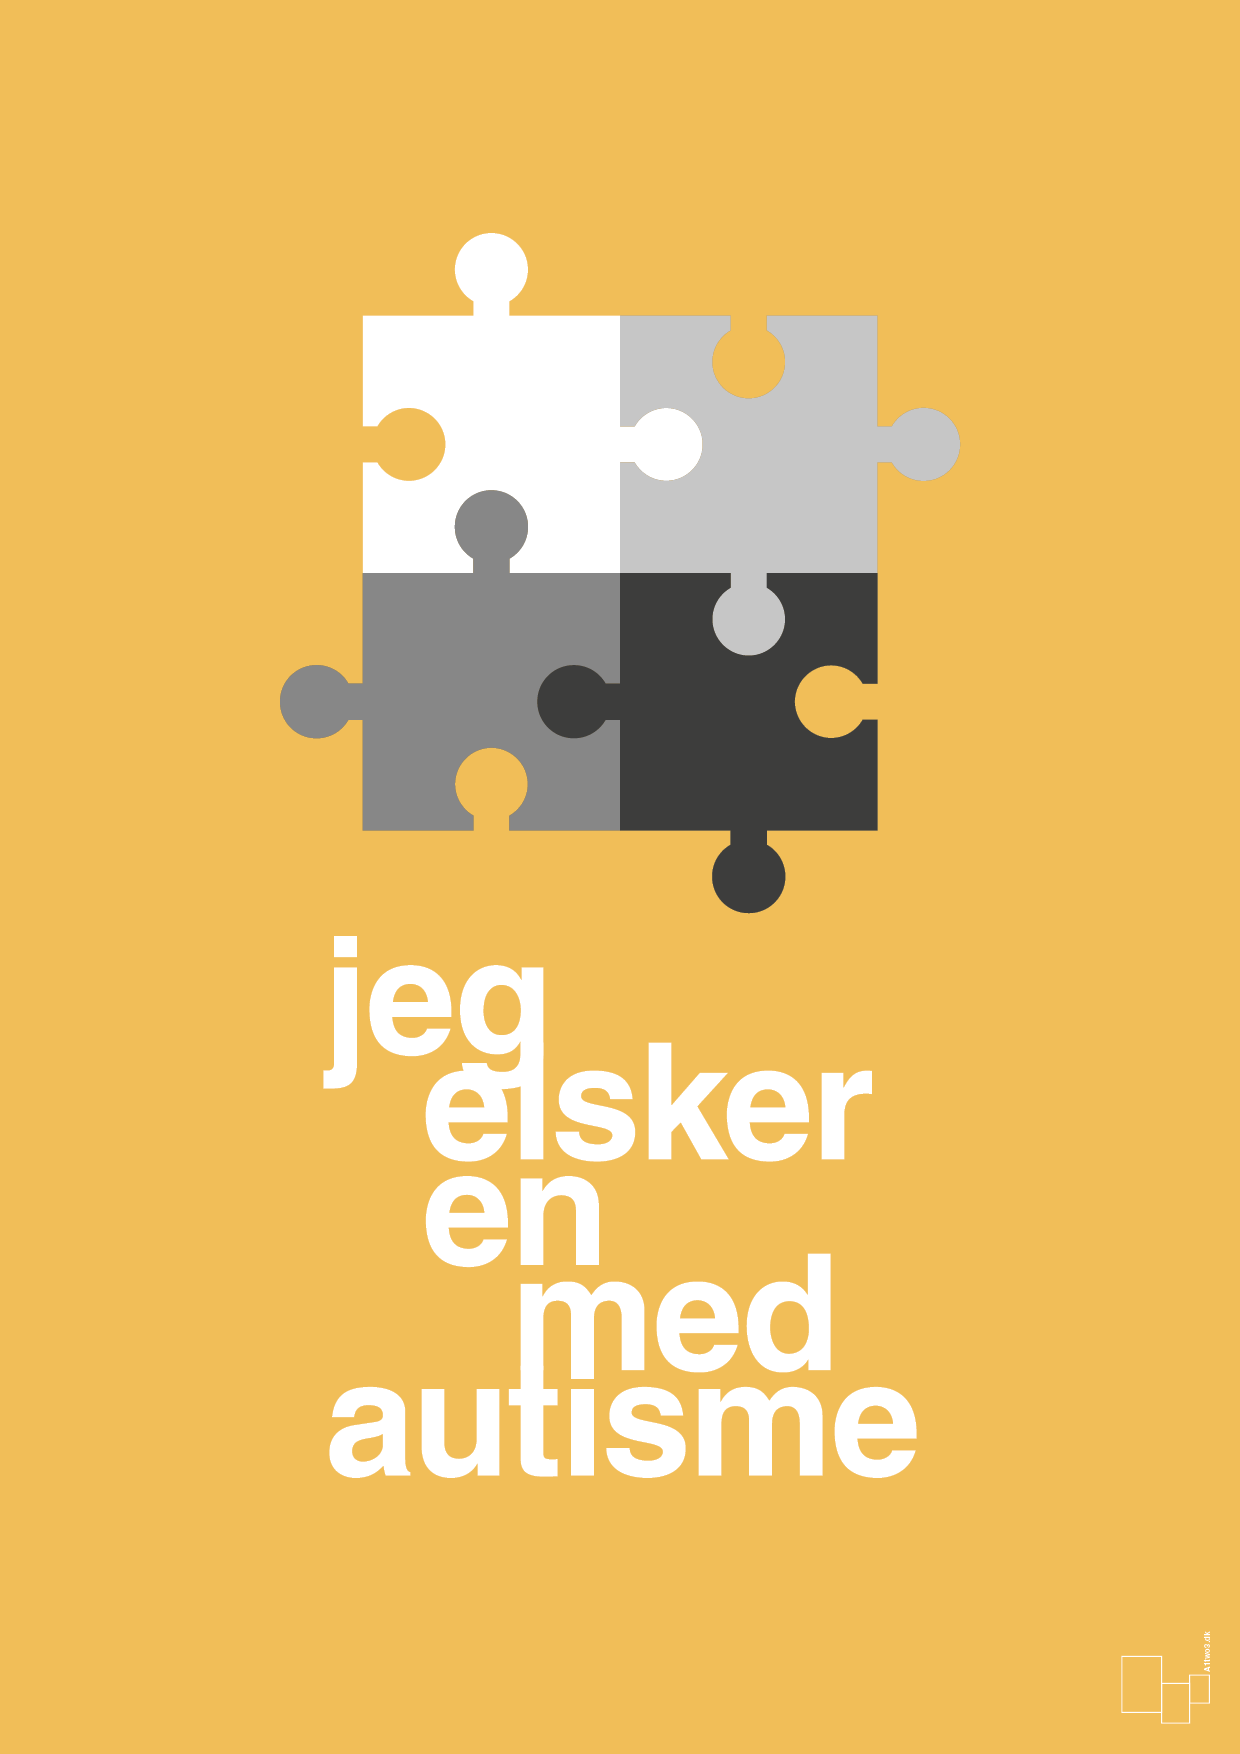 jeg elsker en med autisme - Plakat med Samfund i Honeycomb